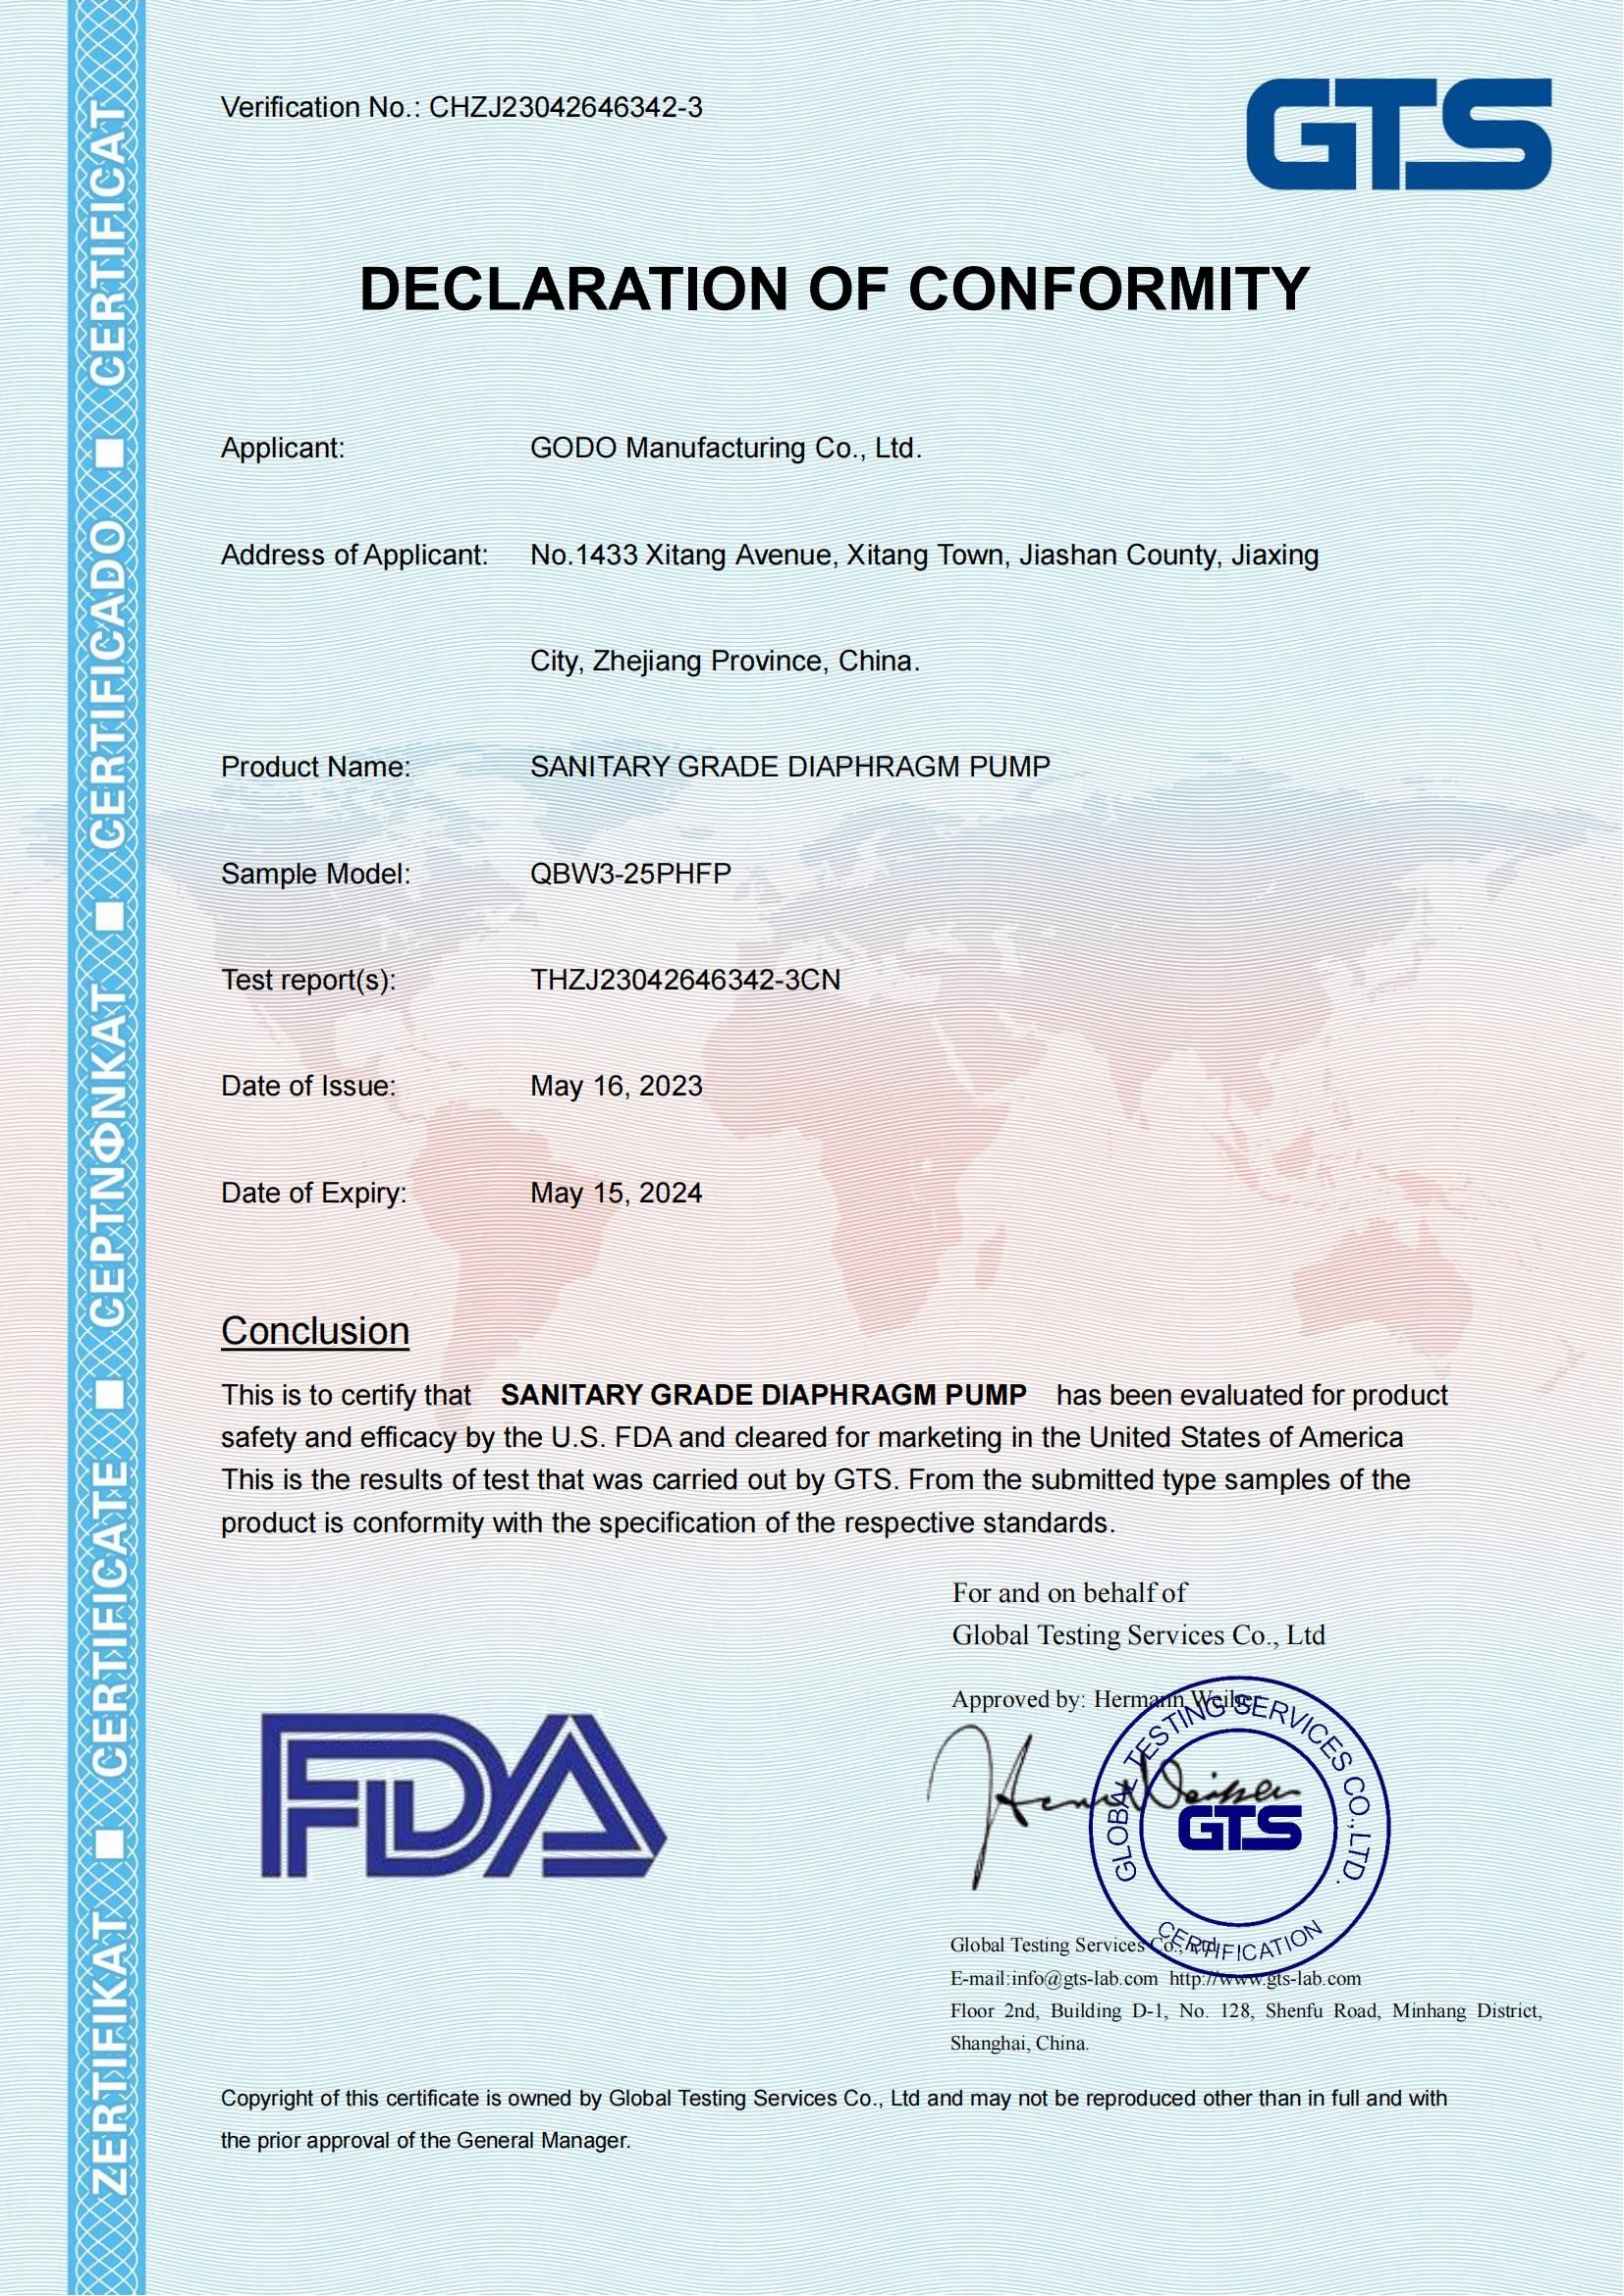 卫生级隔膜泵FDA认证